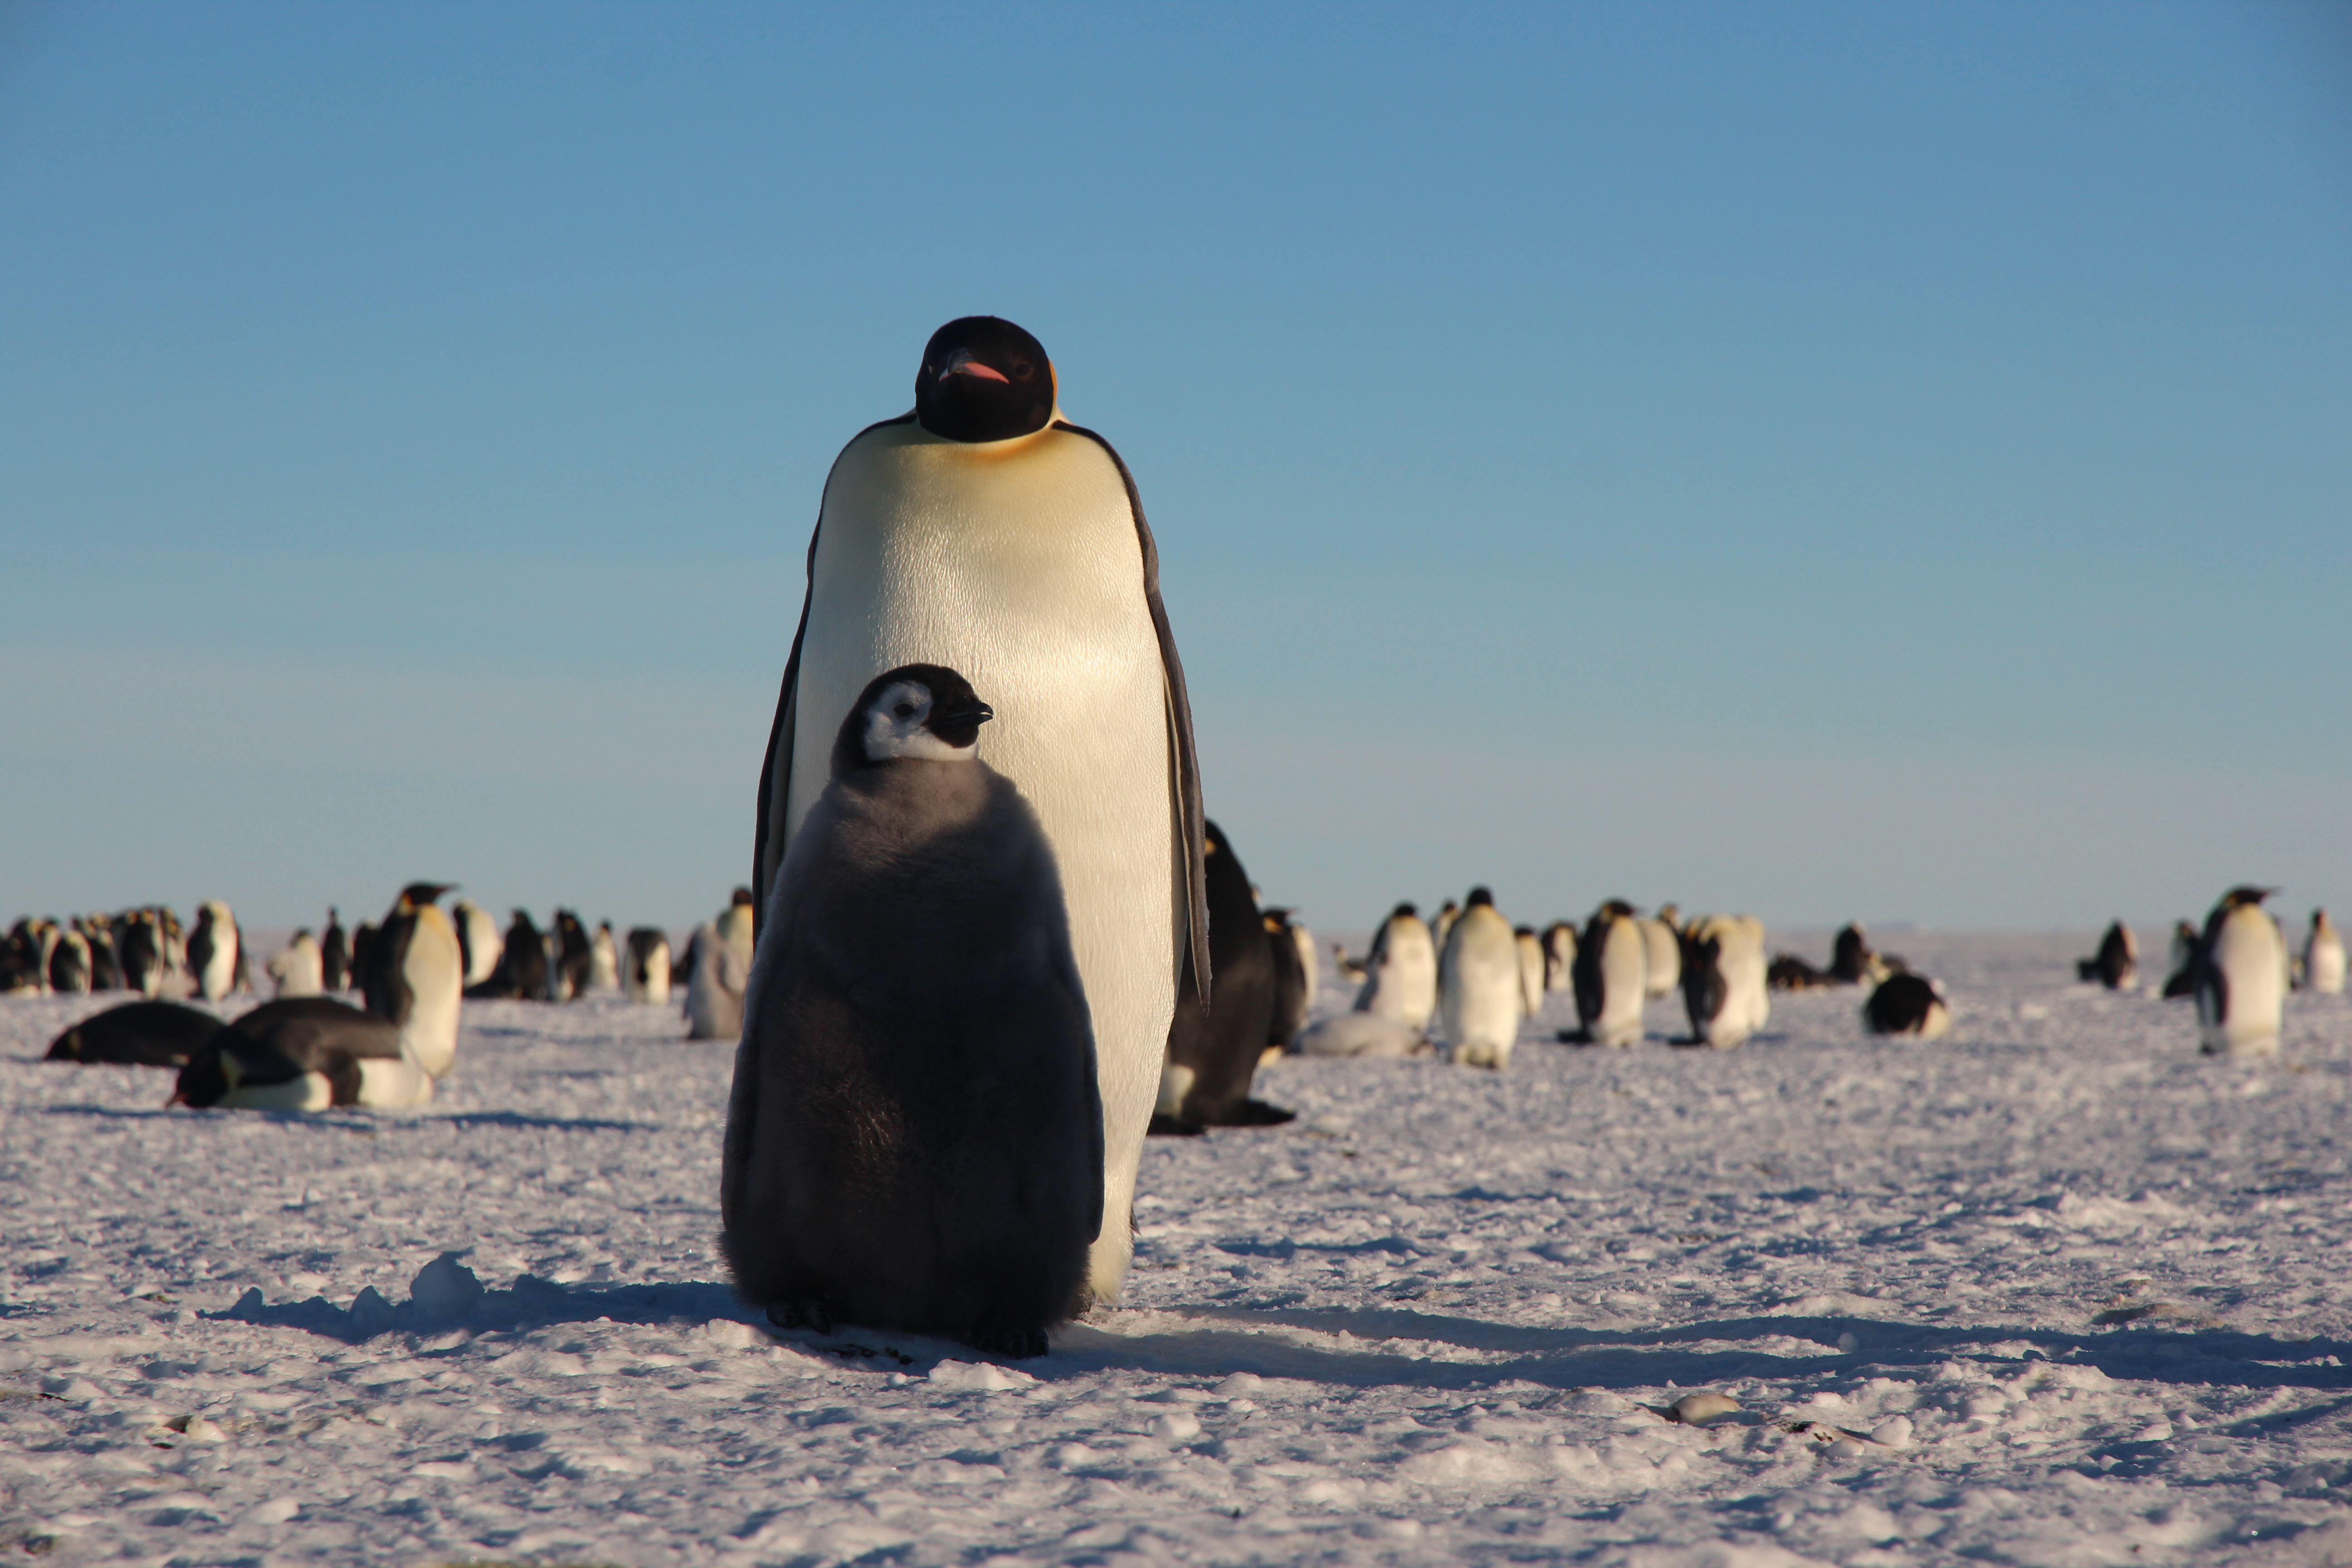 Пингвин императорский фото с человеком